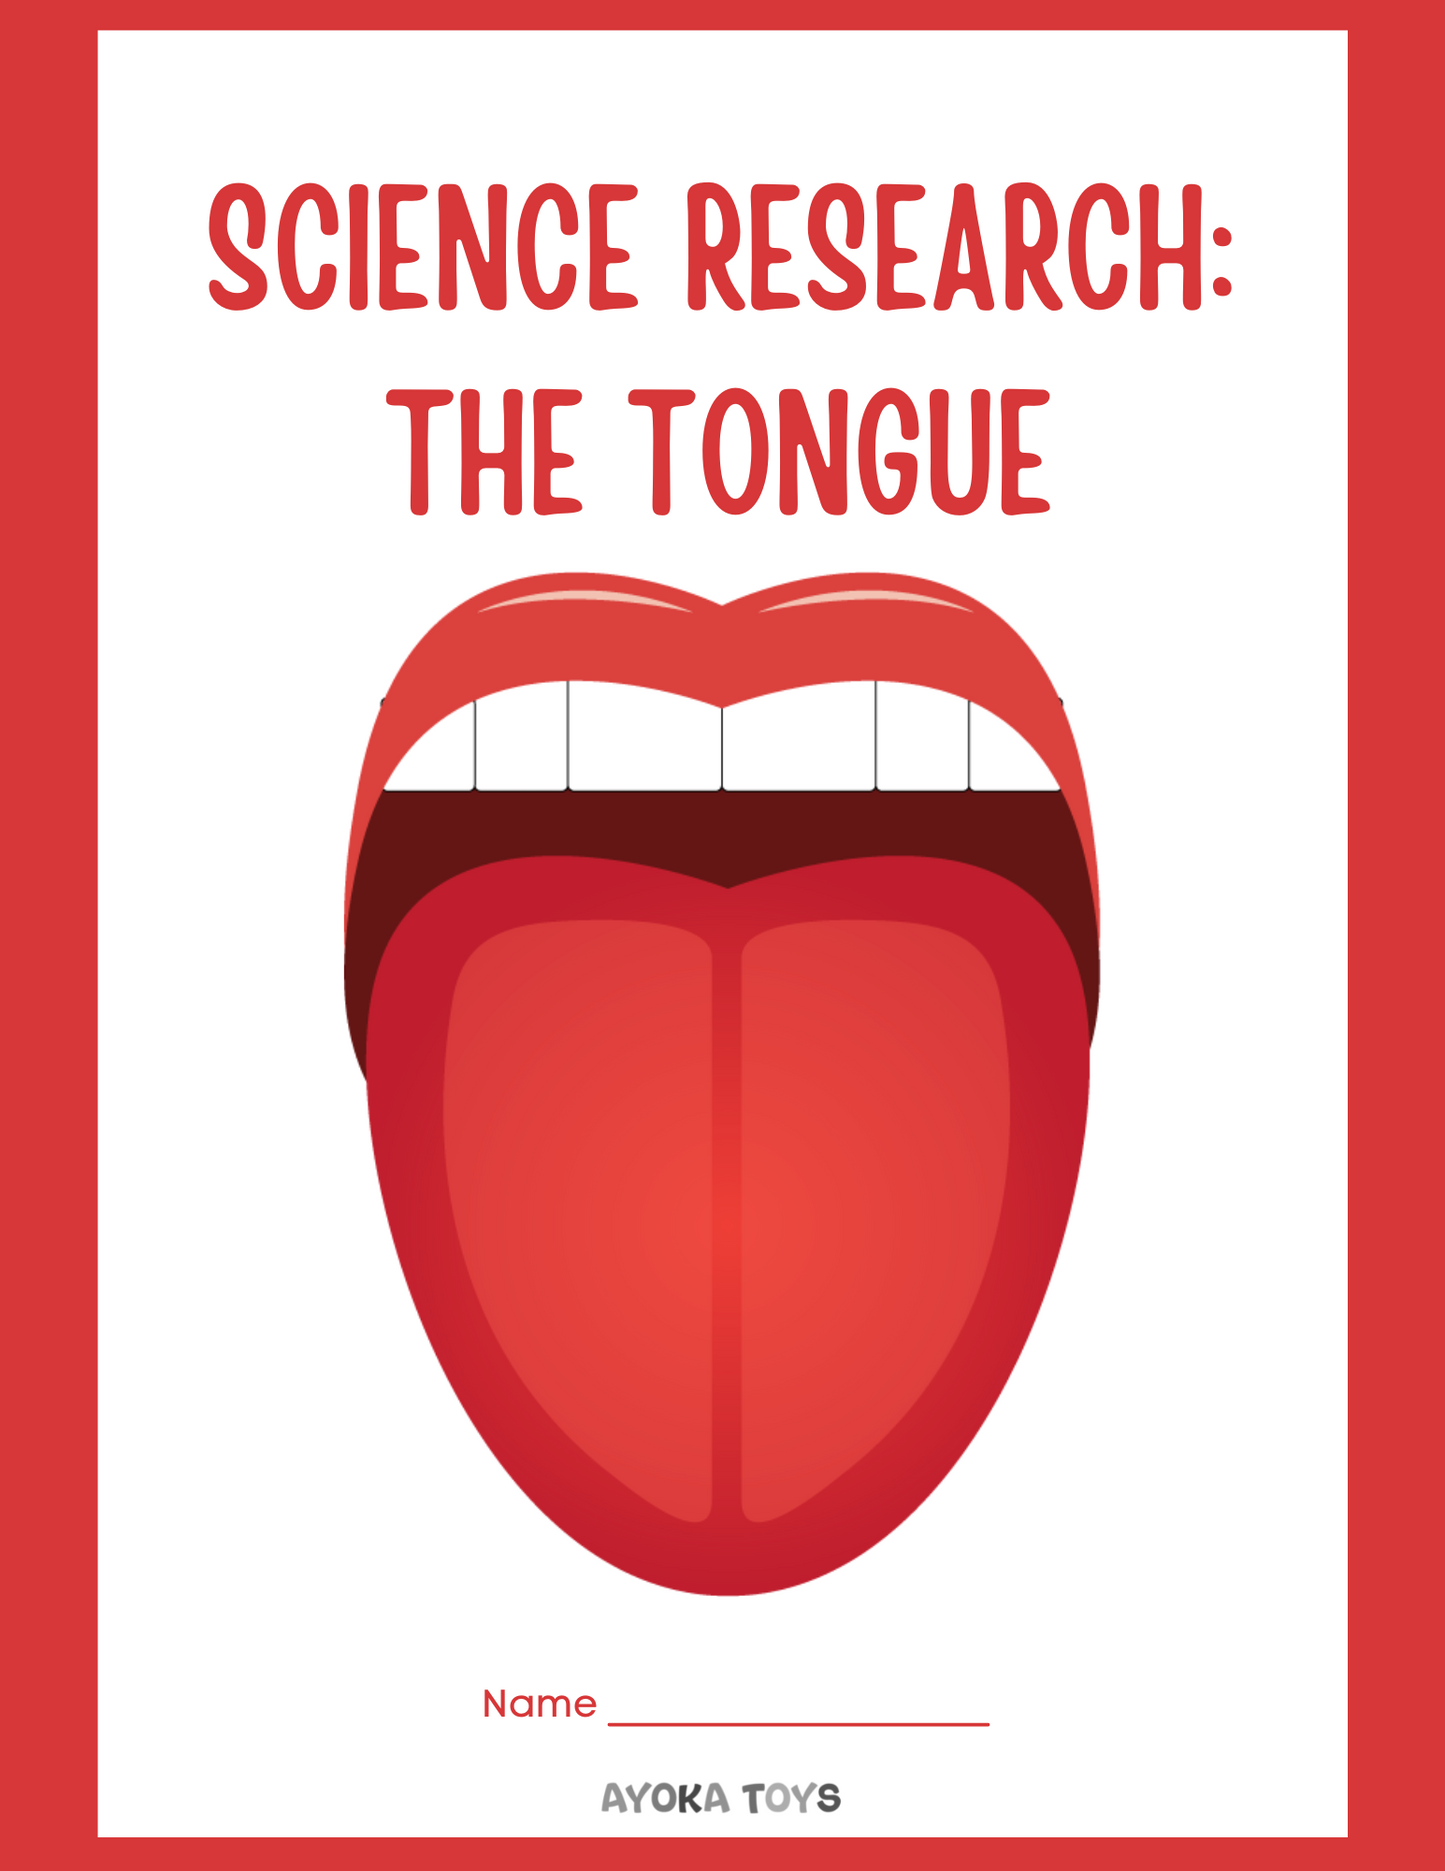 Human Body - Tongue